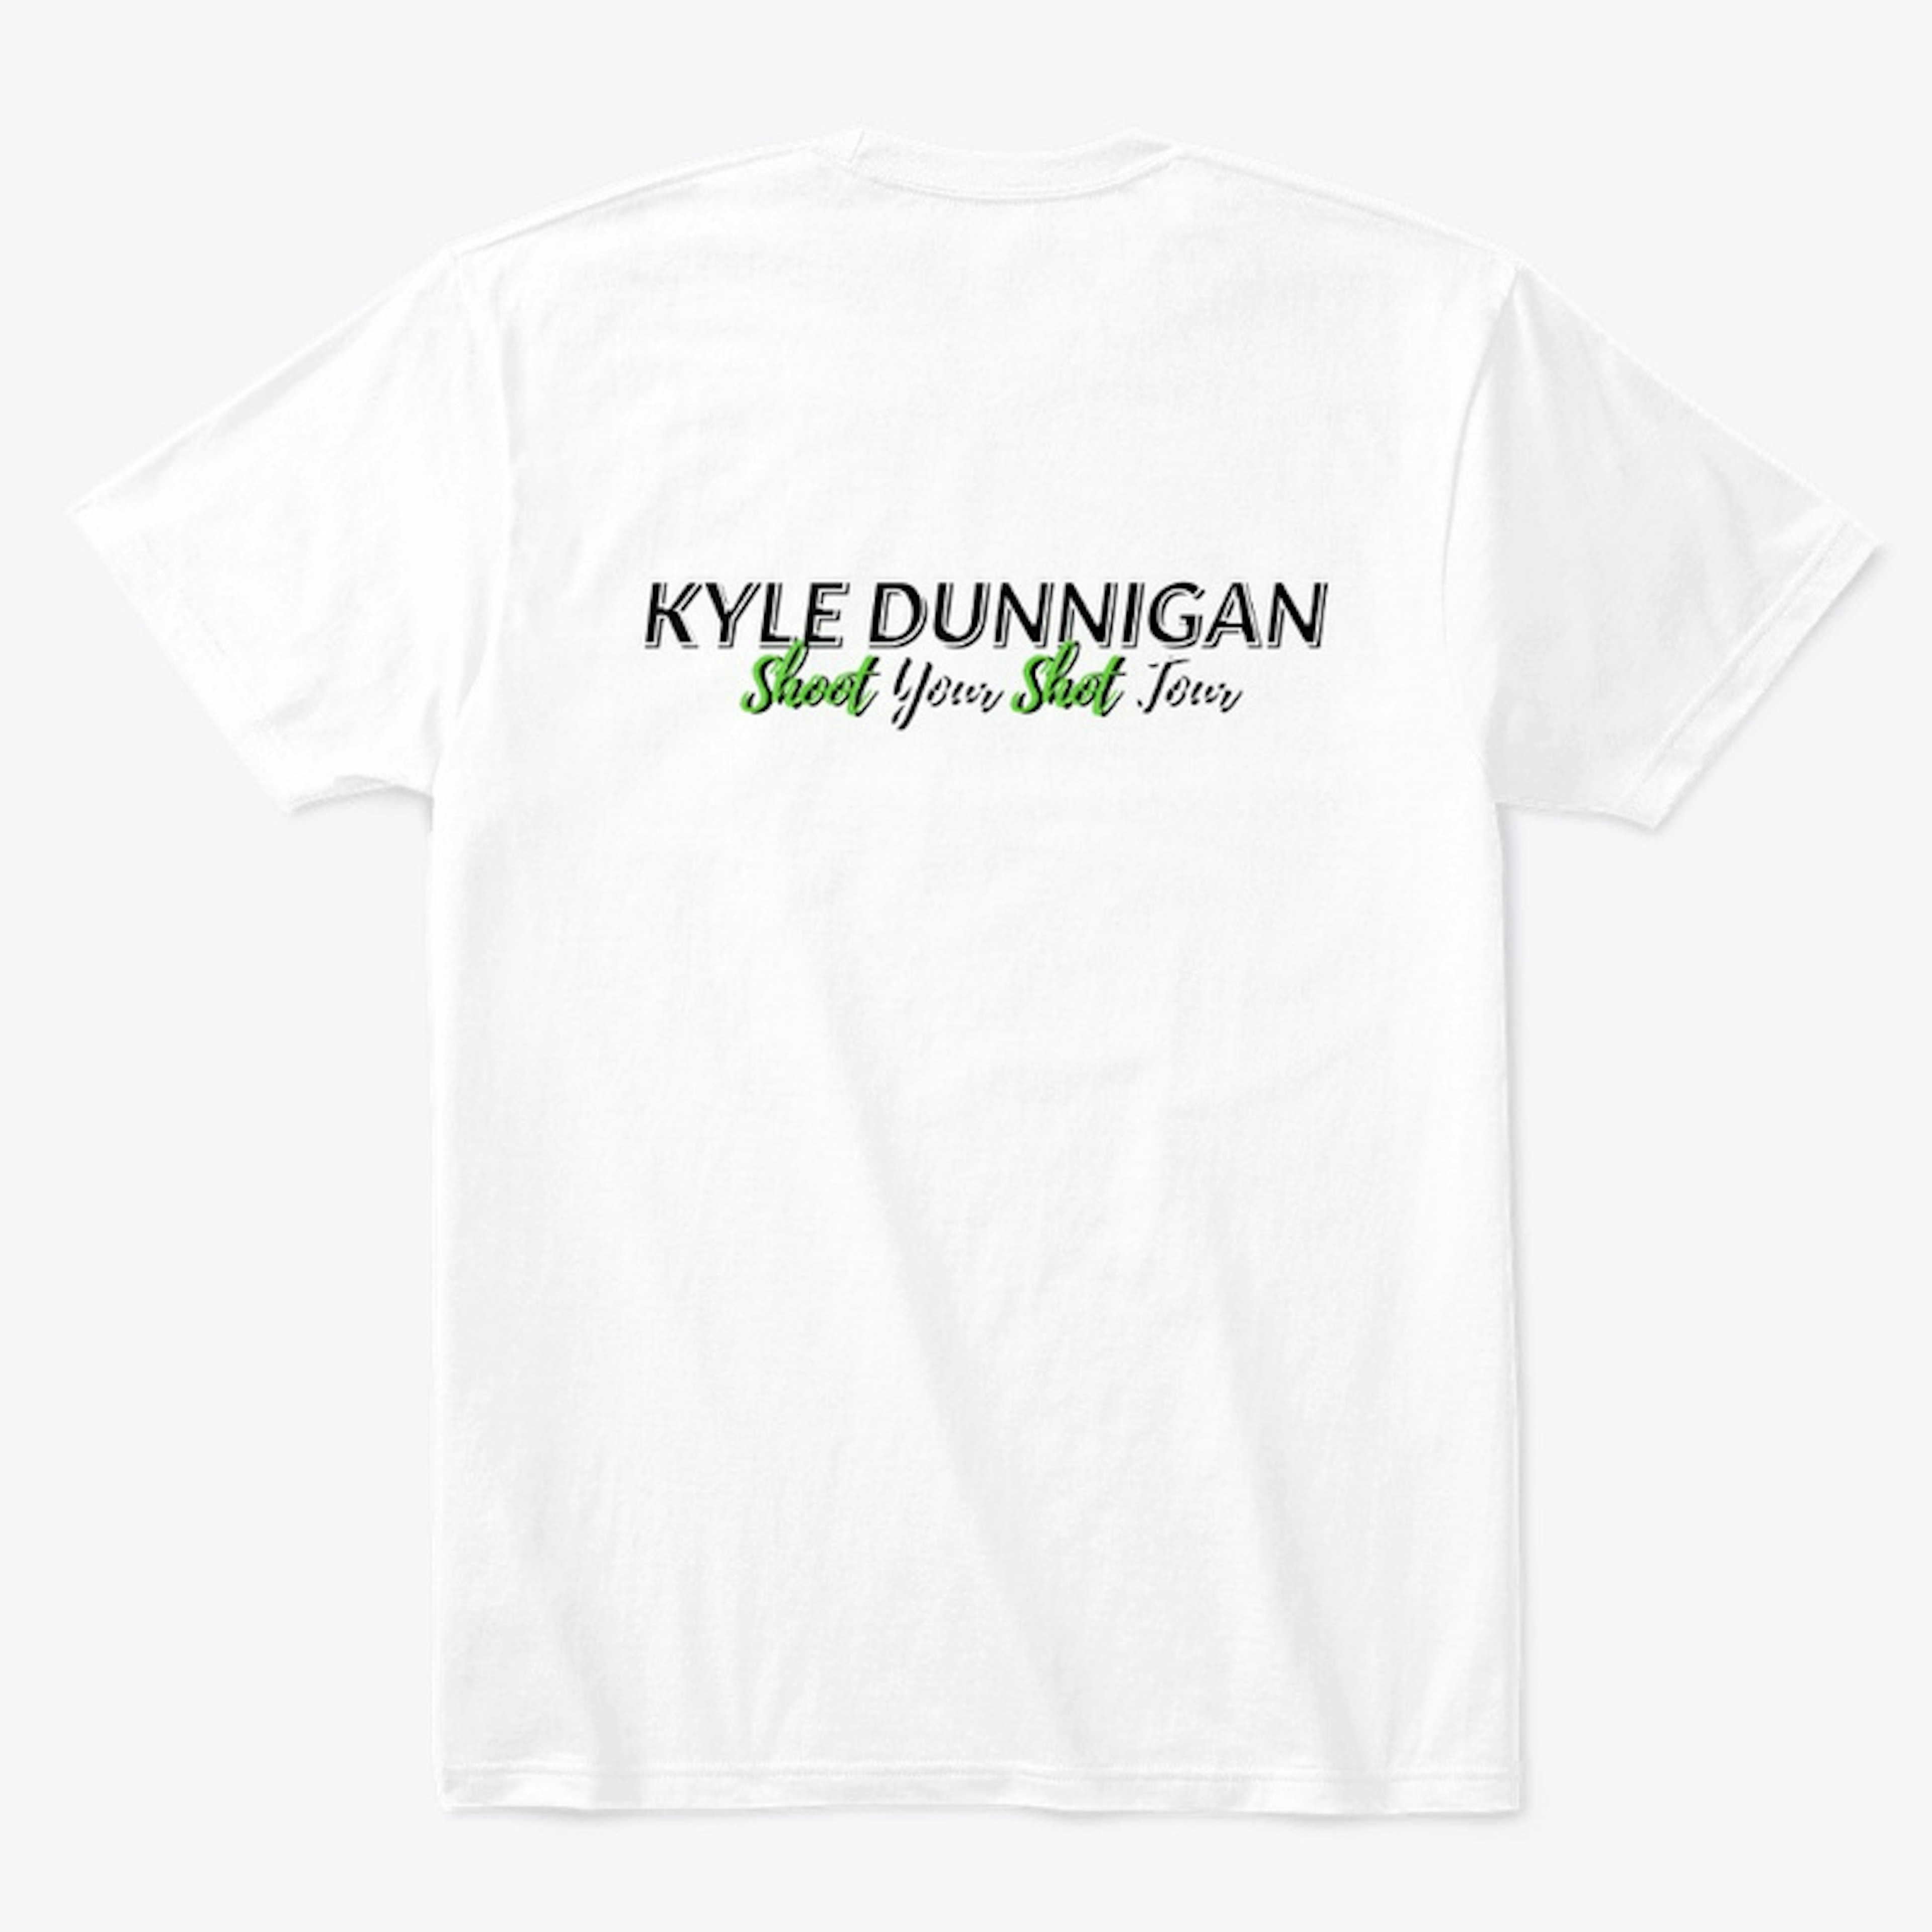 Kyle Dunnigan Shoot Your Shot Tour